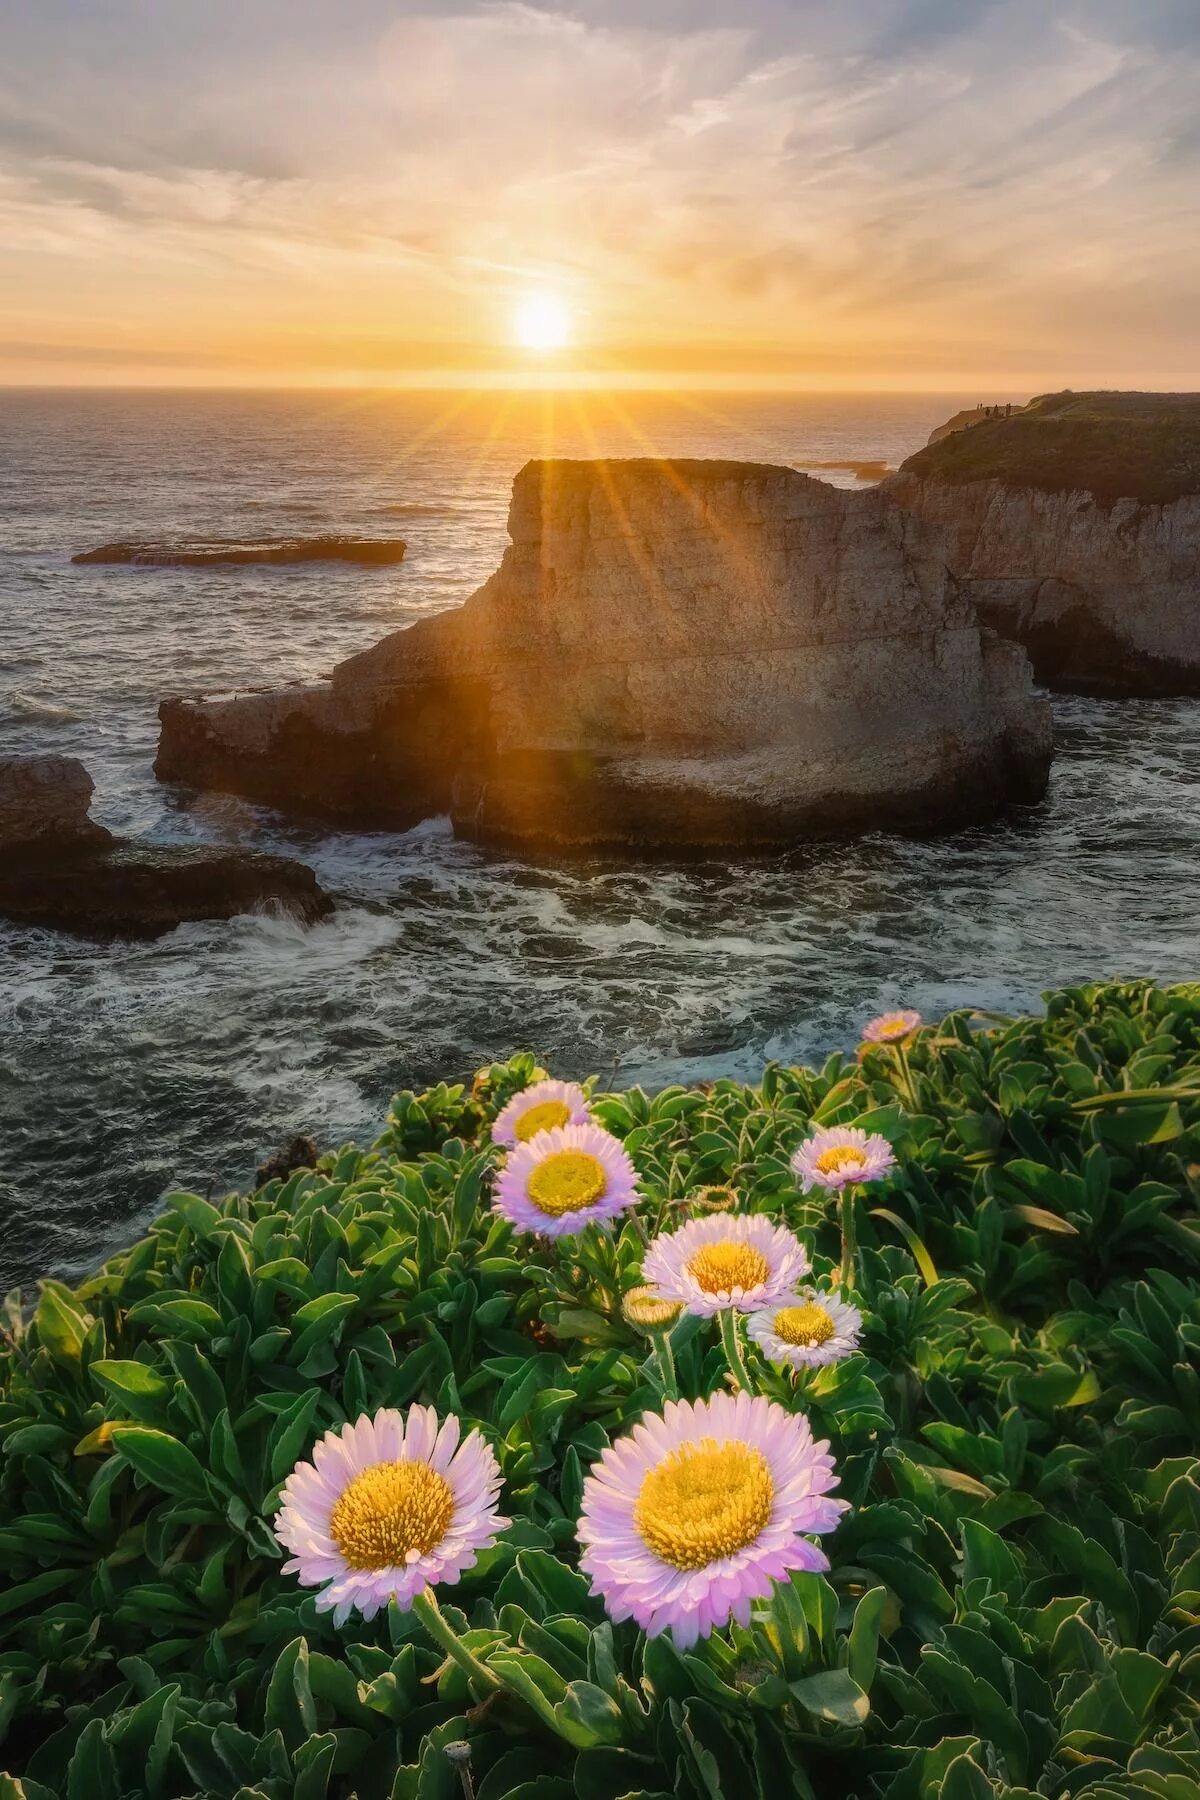 Чудесные картинки. Жизнерадостный пейзаж. Море солнце красота. Красота и Гармония в природе. Утро солнце море цветы.